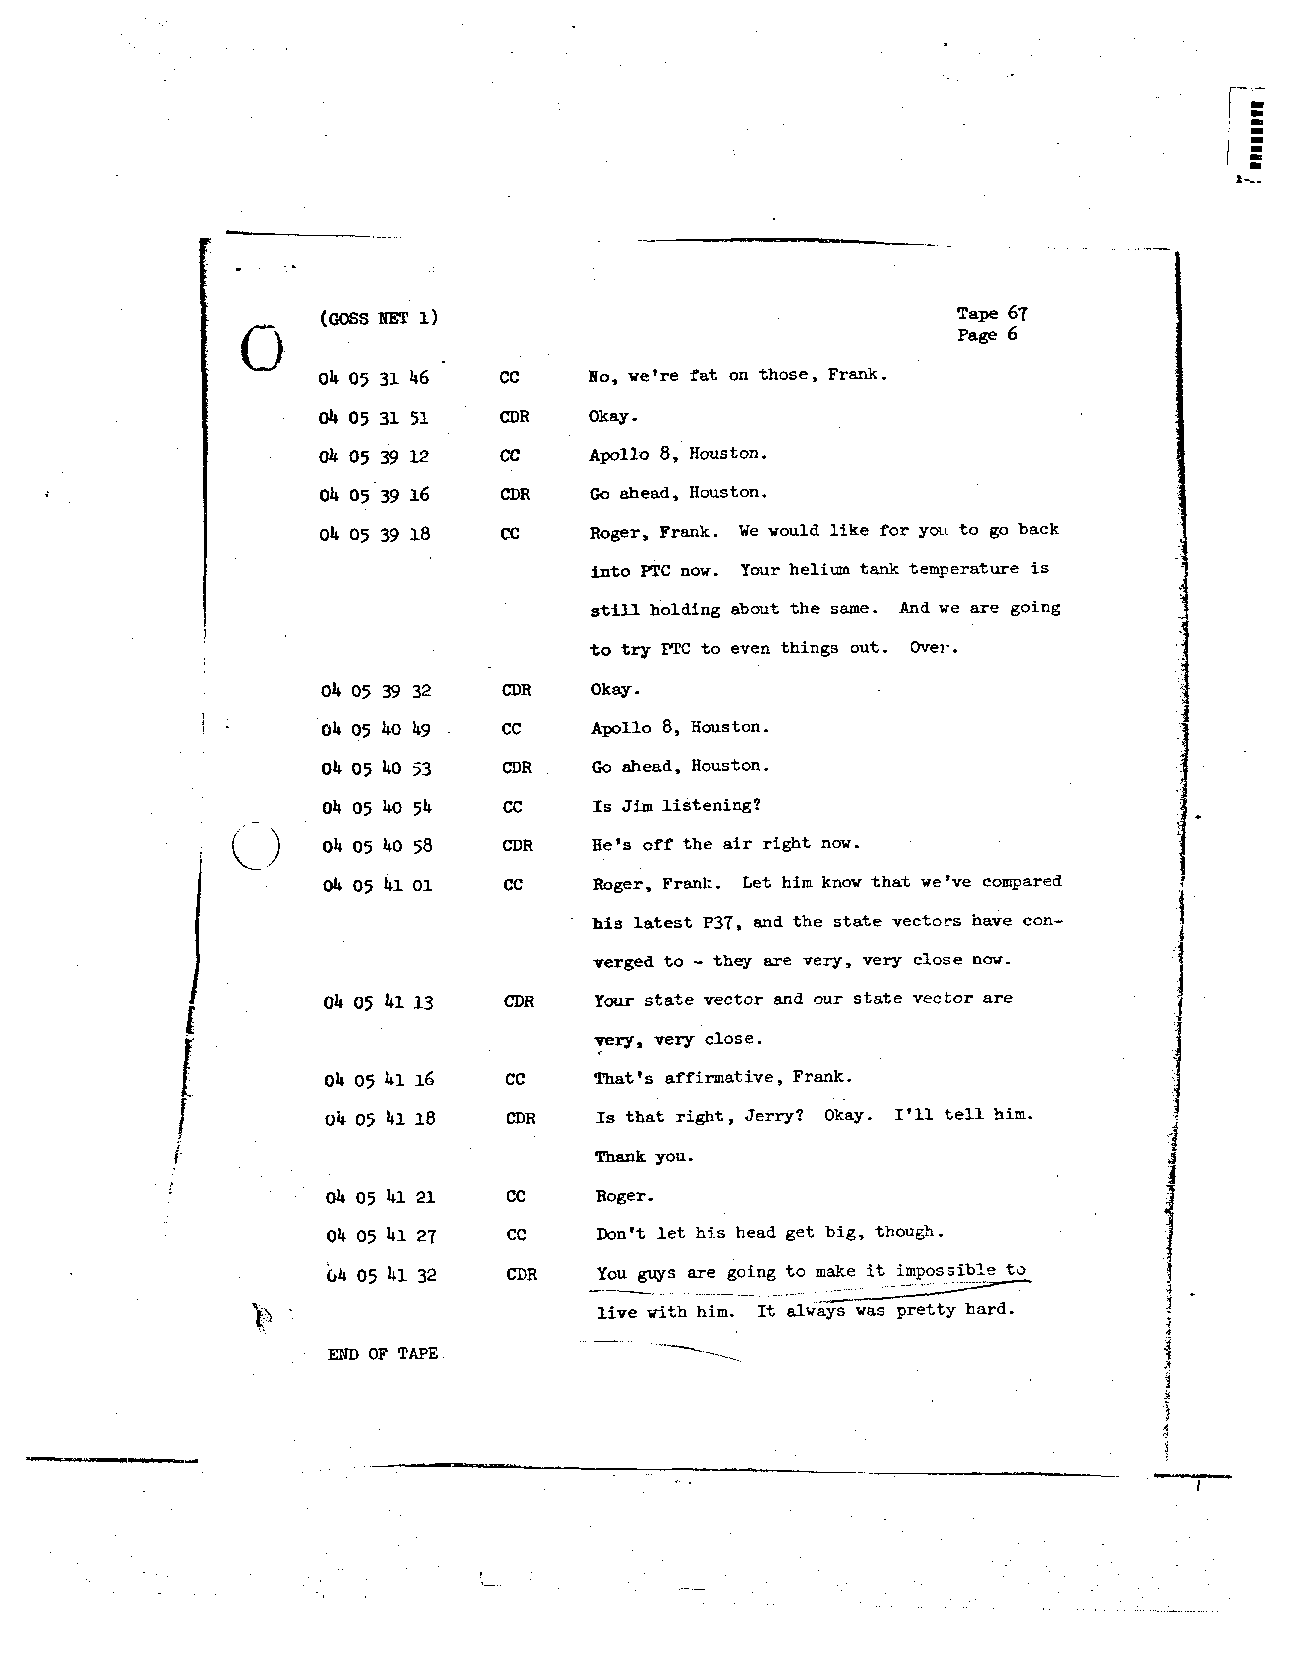 Page 532 of Apollo 8’s original transcript